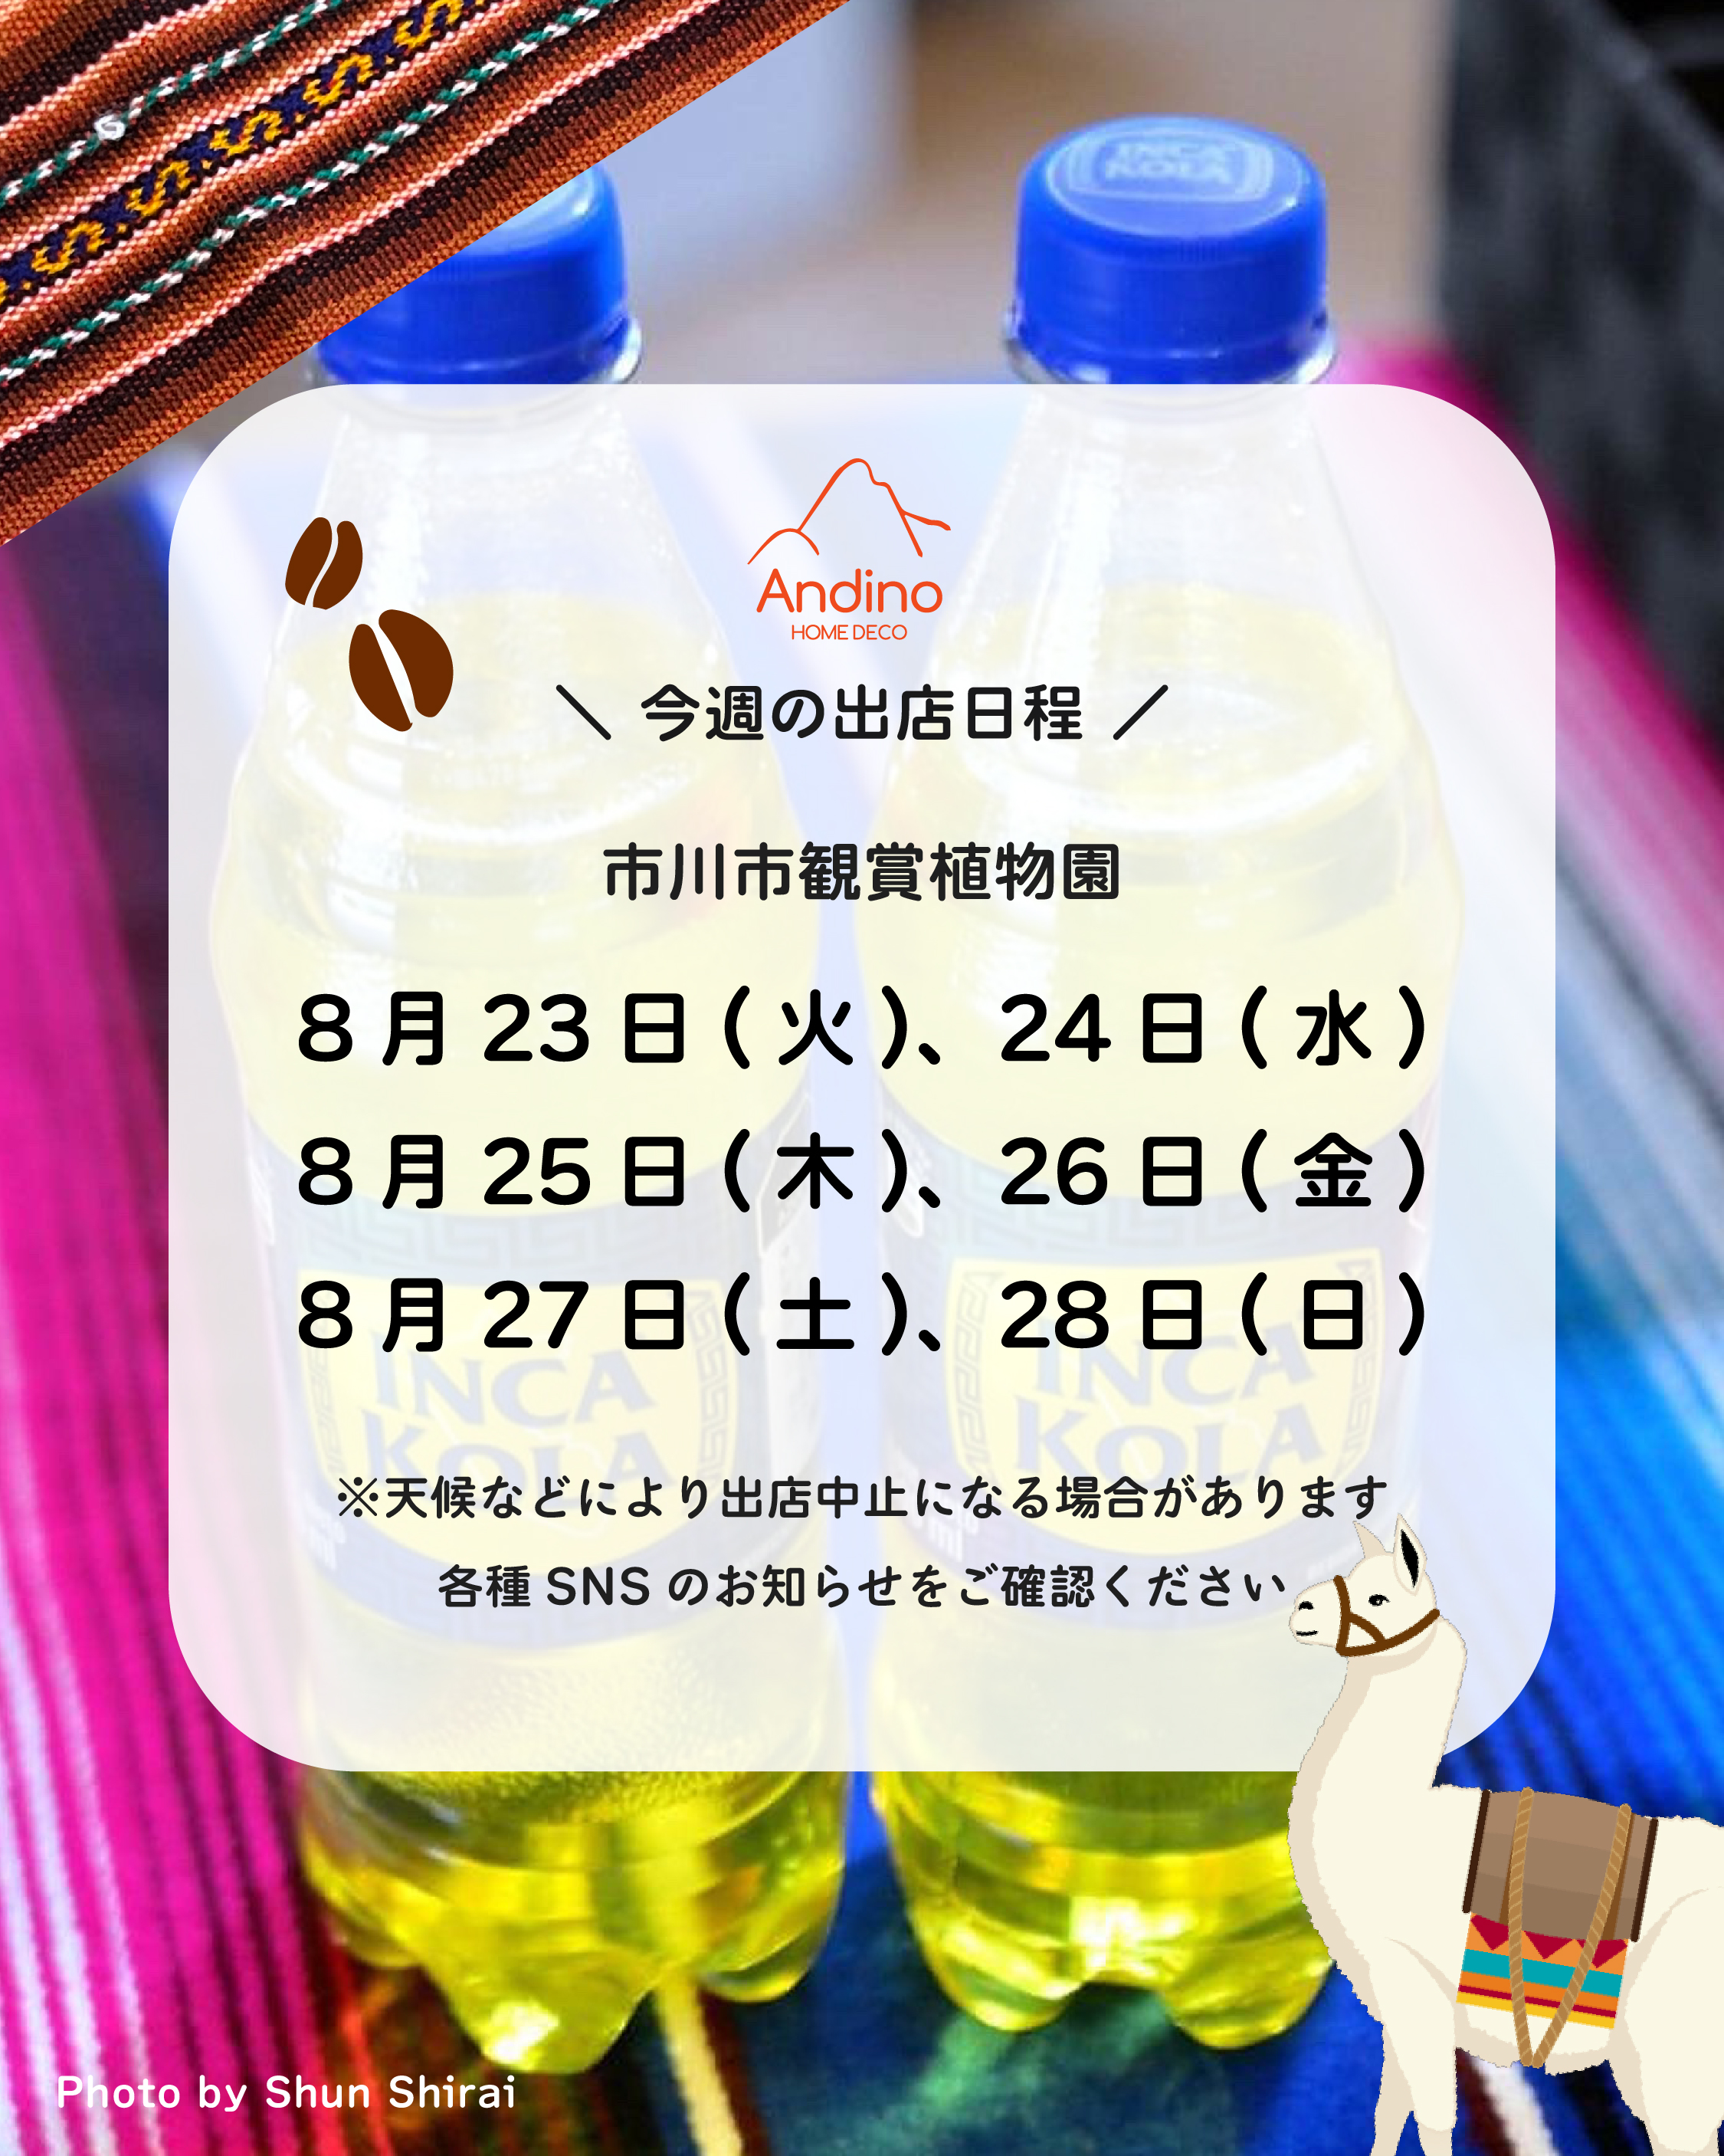 【今週のAndino出店予定日8月23日(火)〜28日(日)】